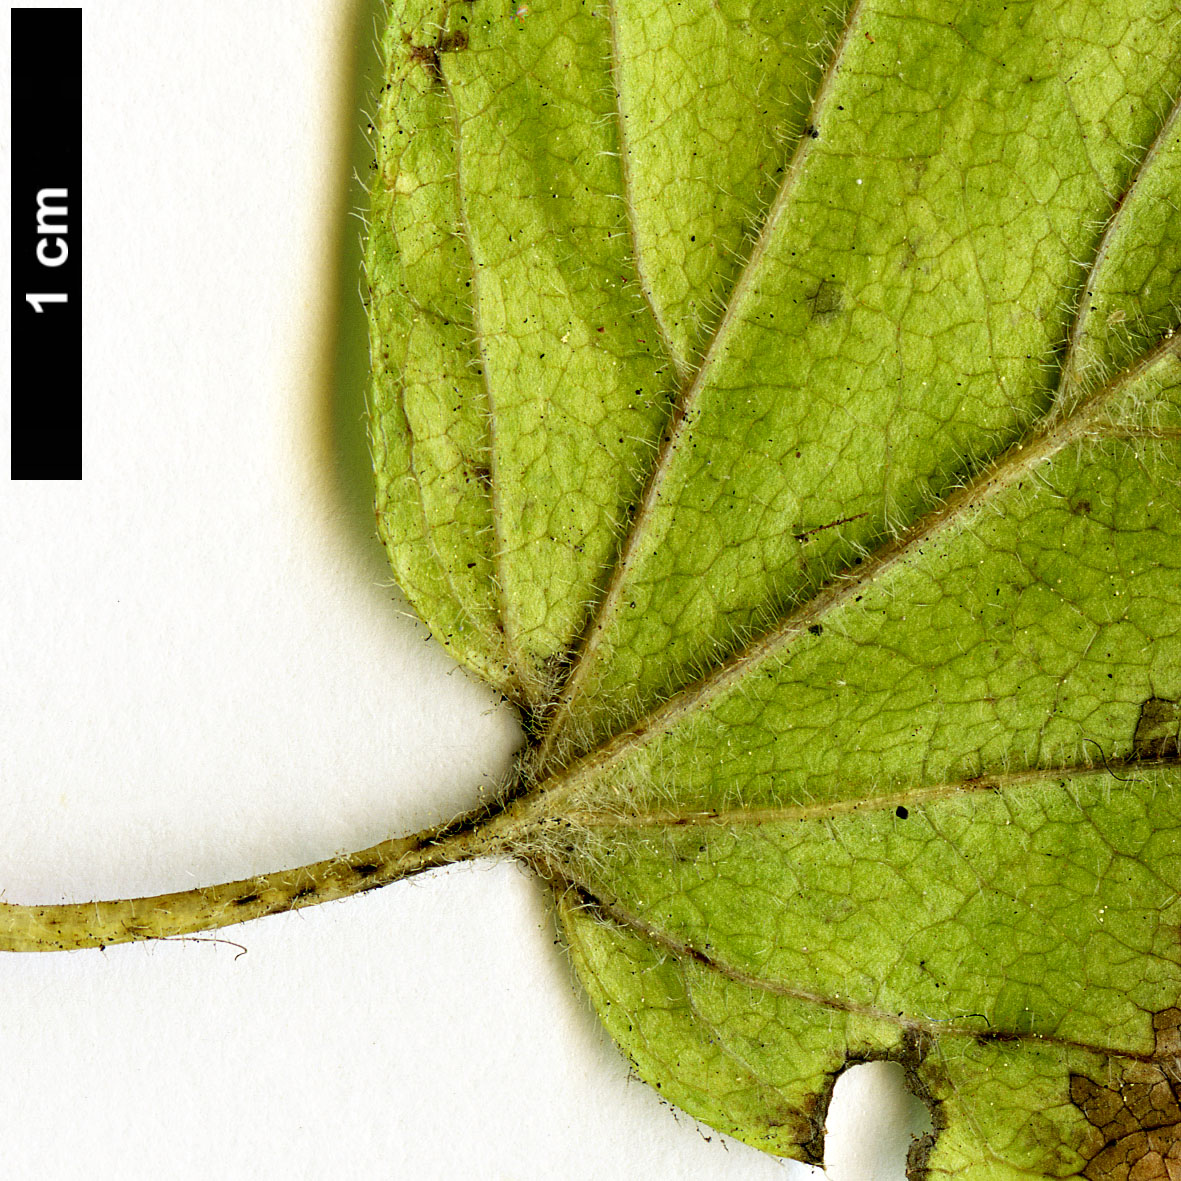 High resolution image: Family: Adoxaceae - Genus: Viburnum - Taxon: ellipticum